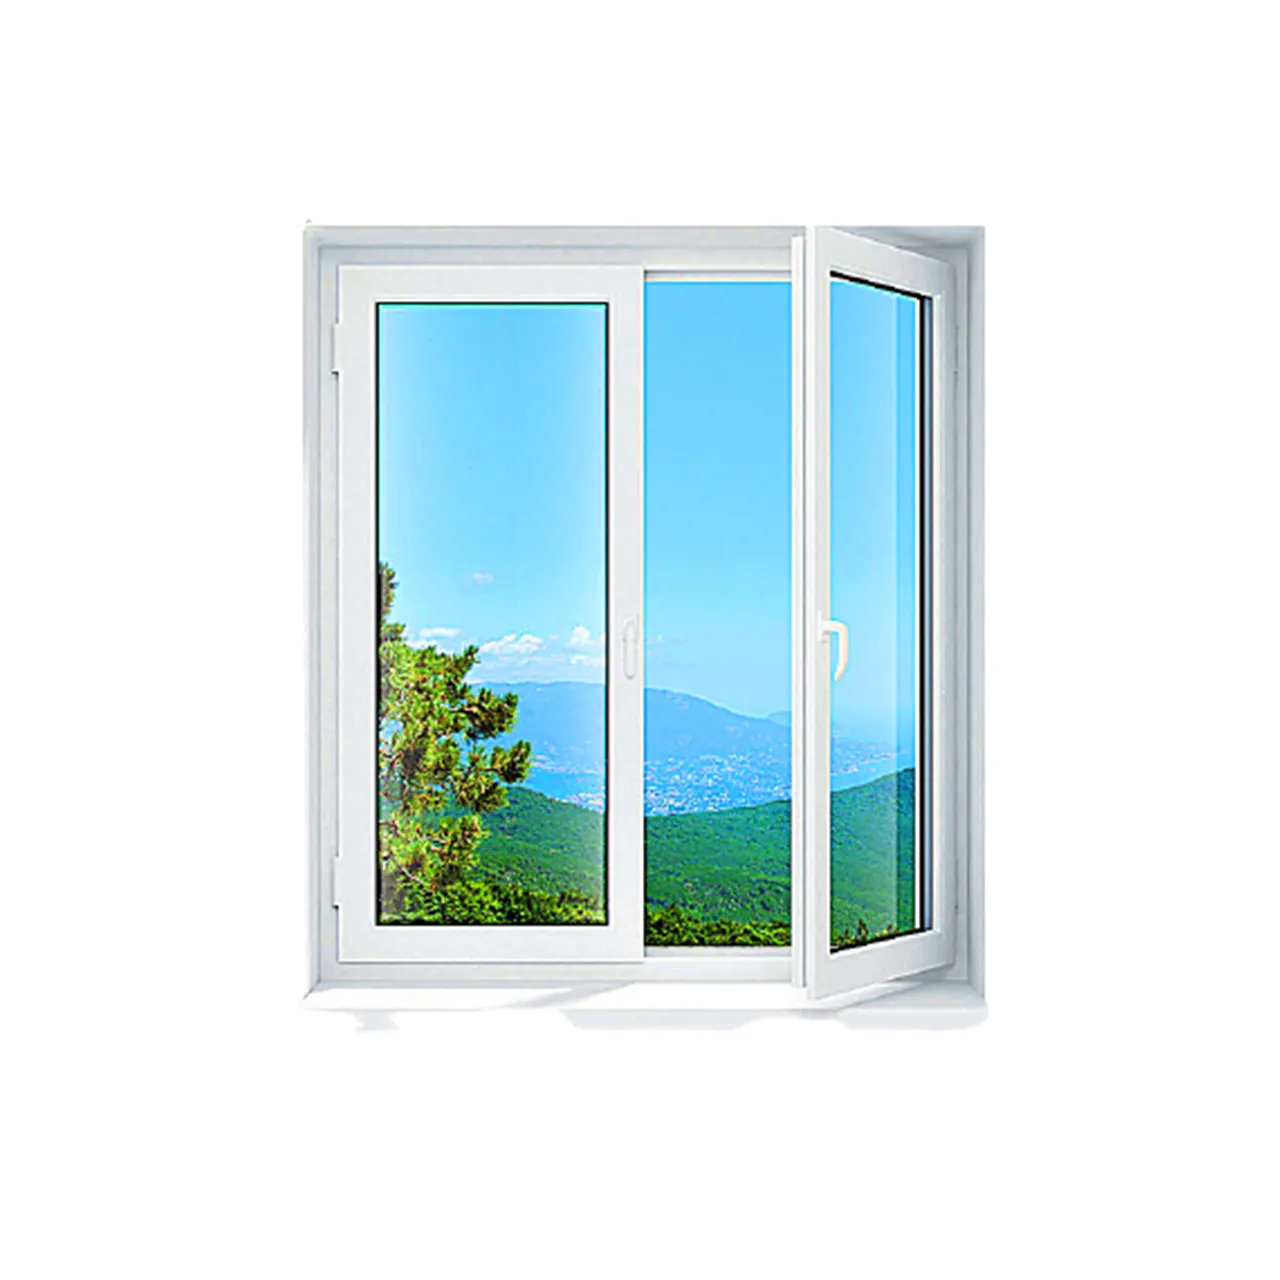 Pvc finestre a battente della finestra del vinile del vinile profili finestre in pvc polonia